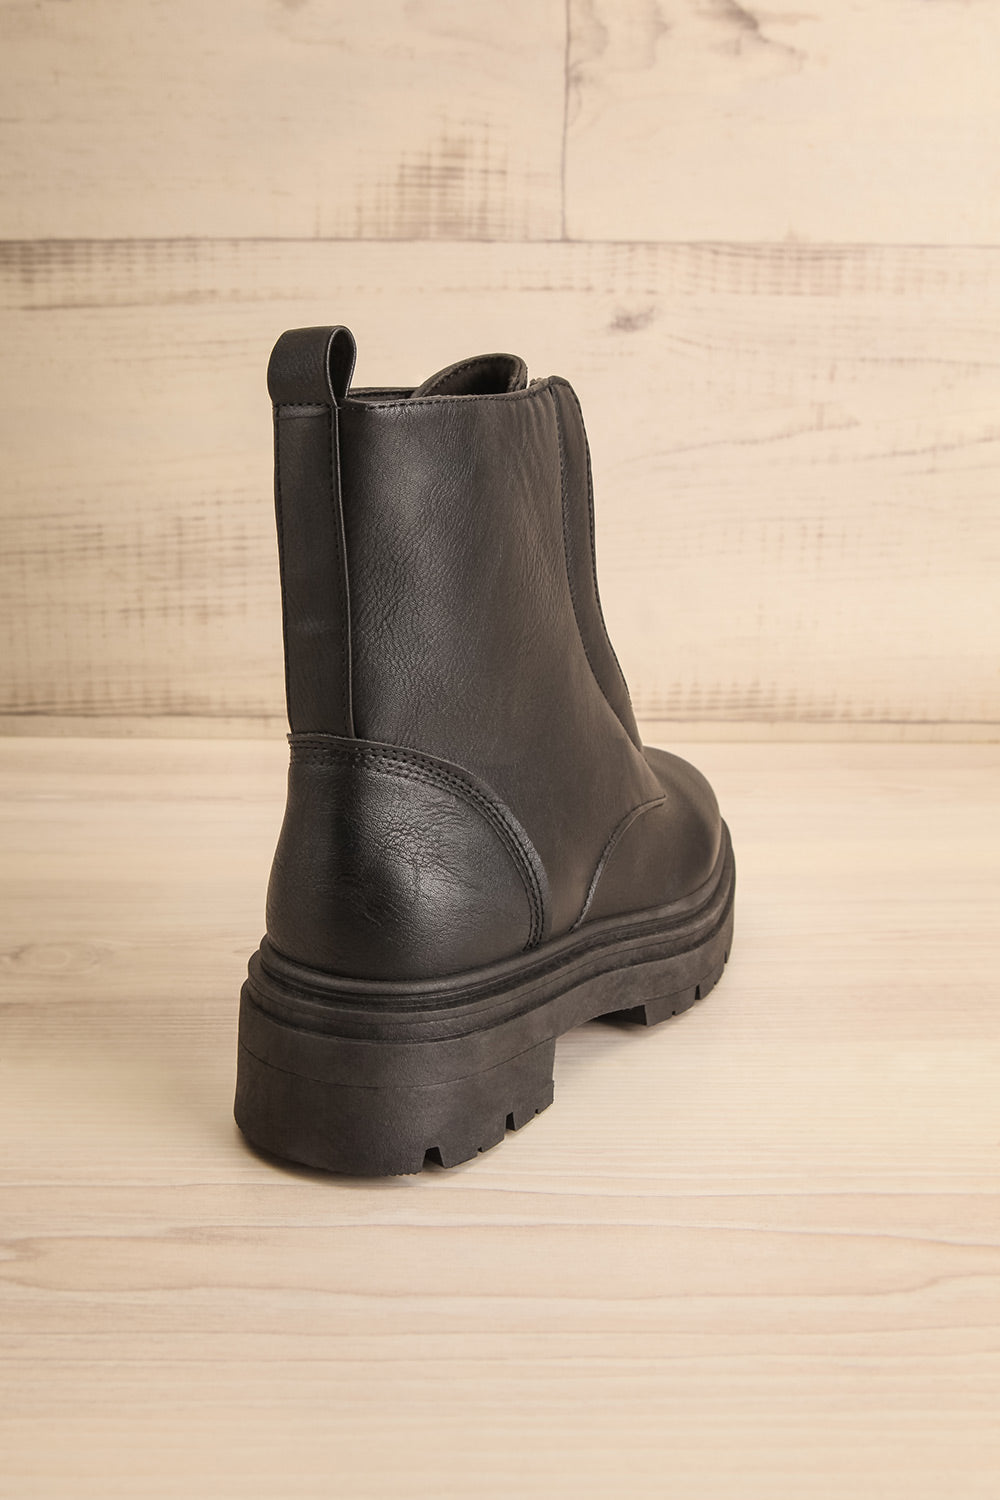 Celeriter Black Faux-Leather Platform Boots | La petite garçonne back view